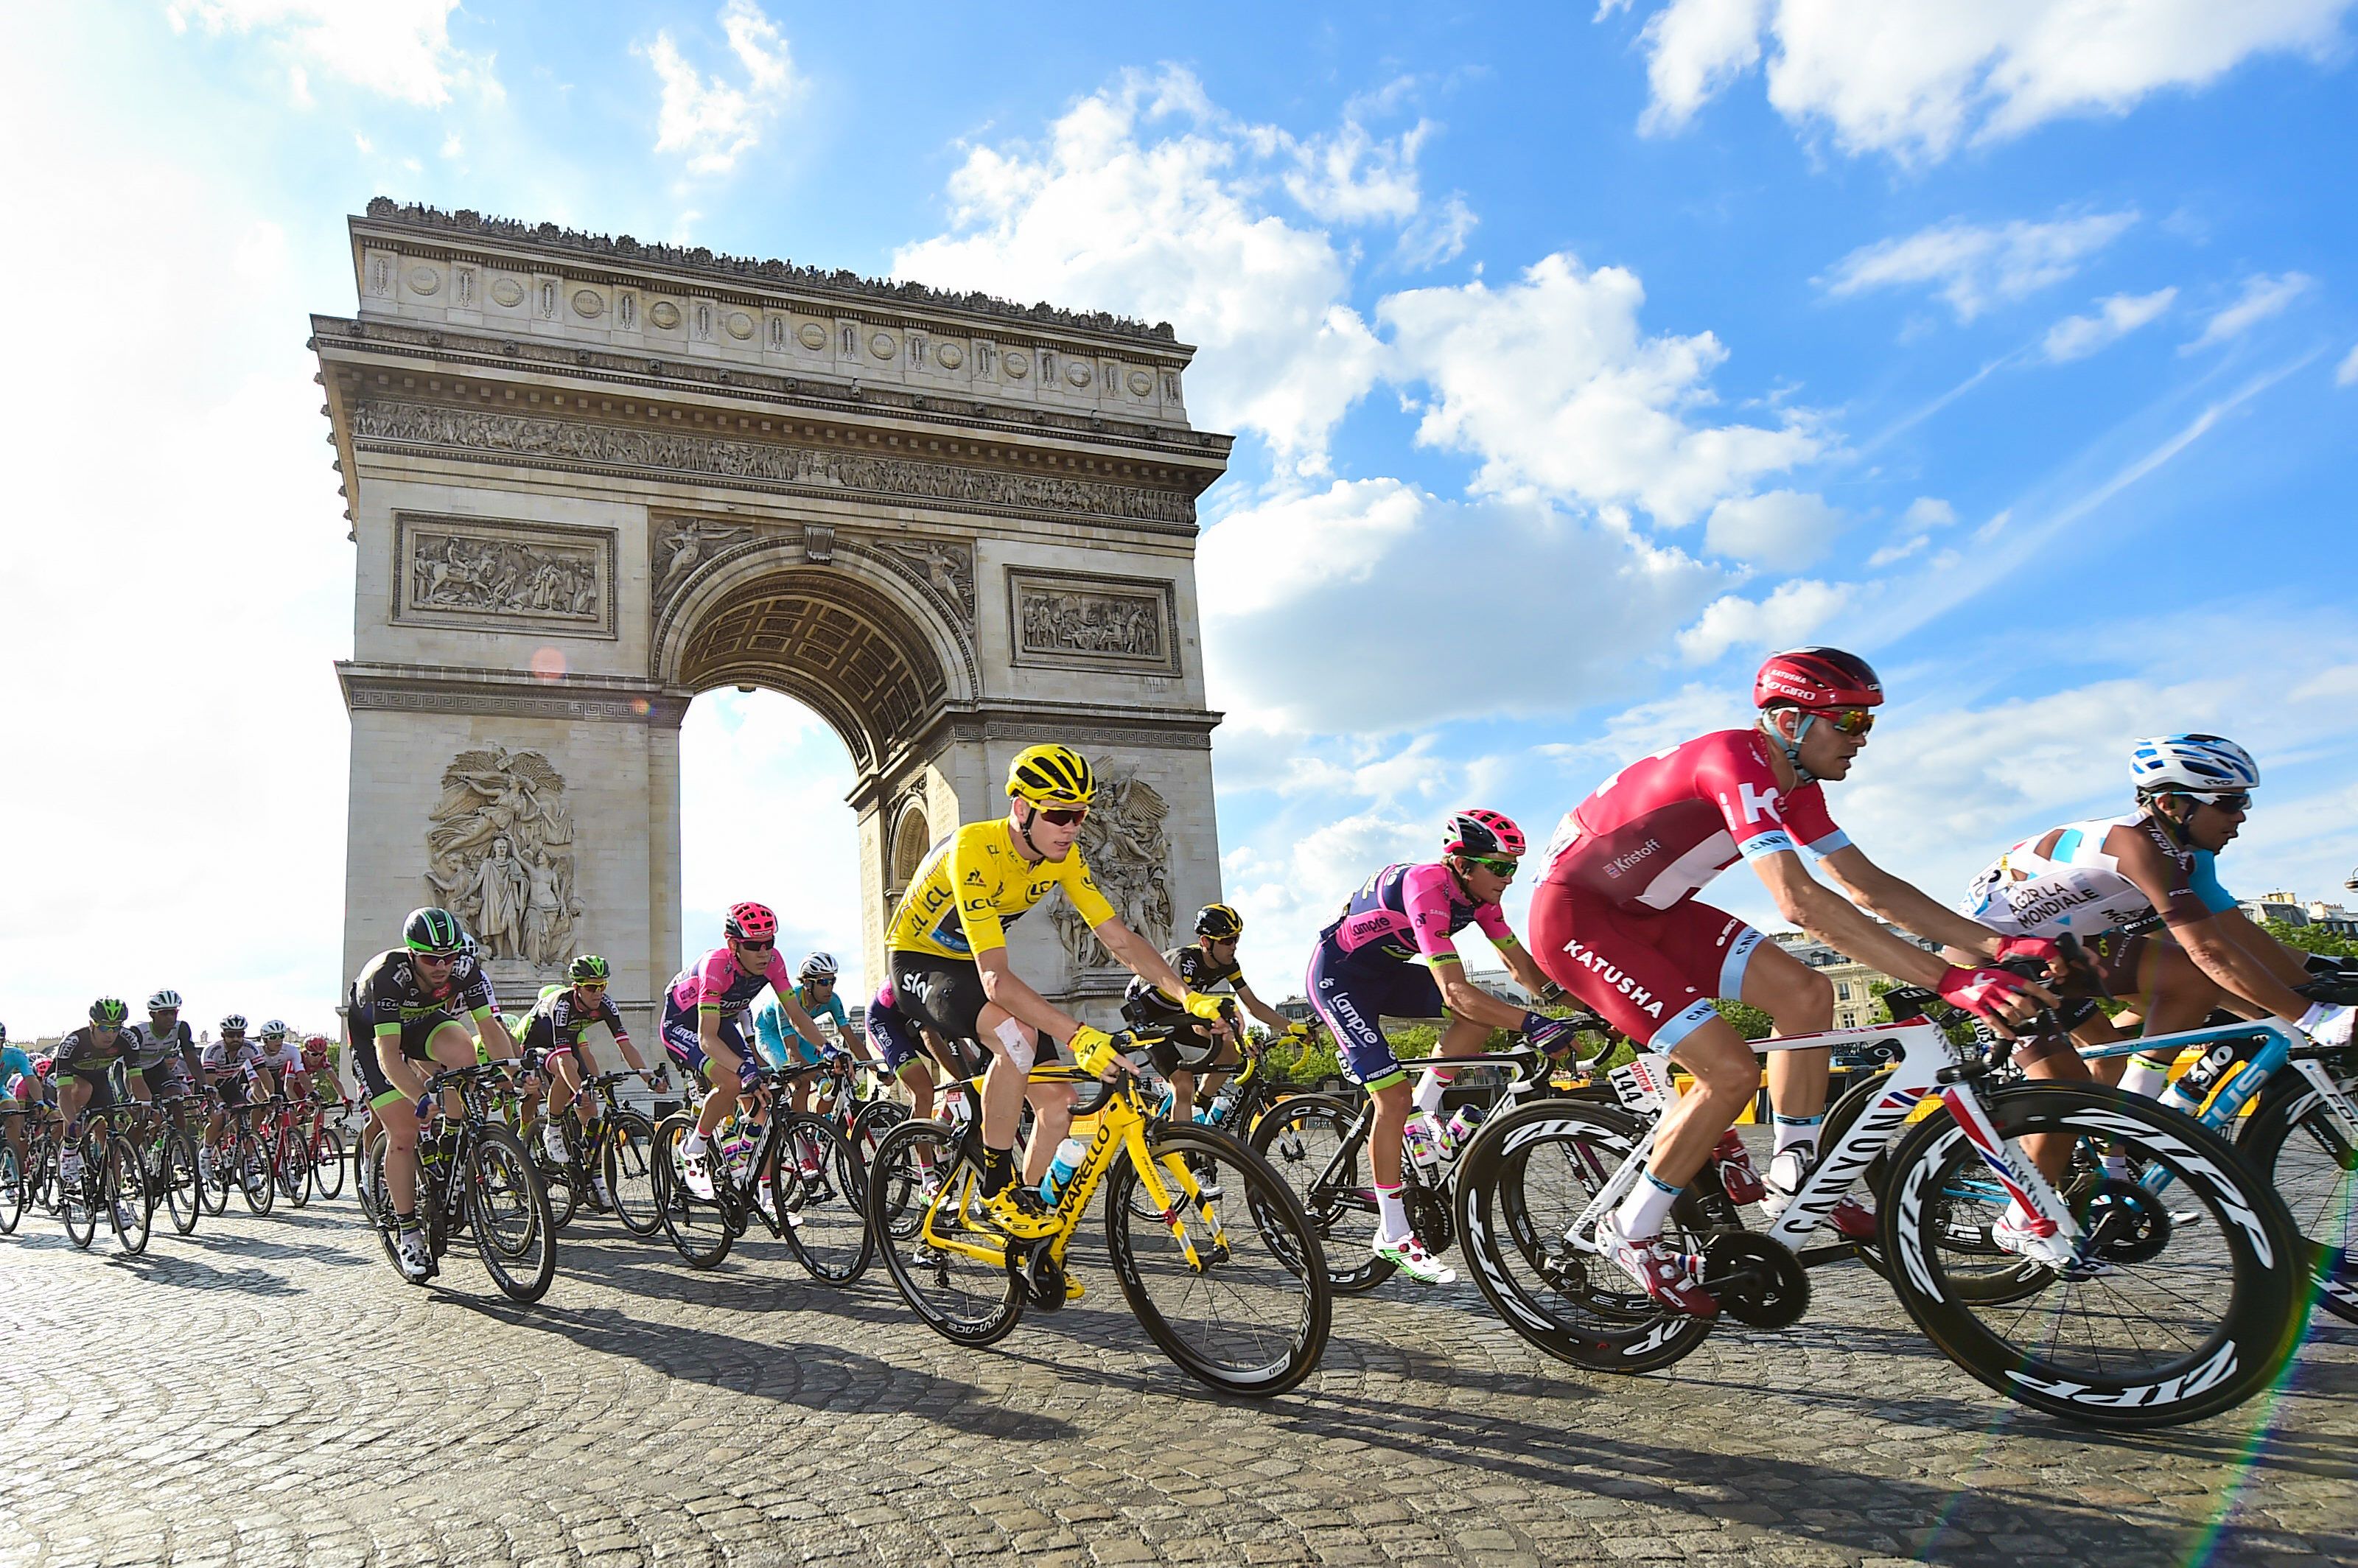 Tour de France VIP start and finish